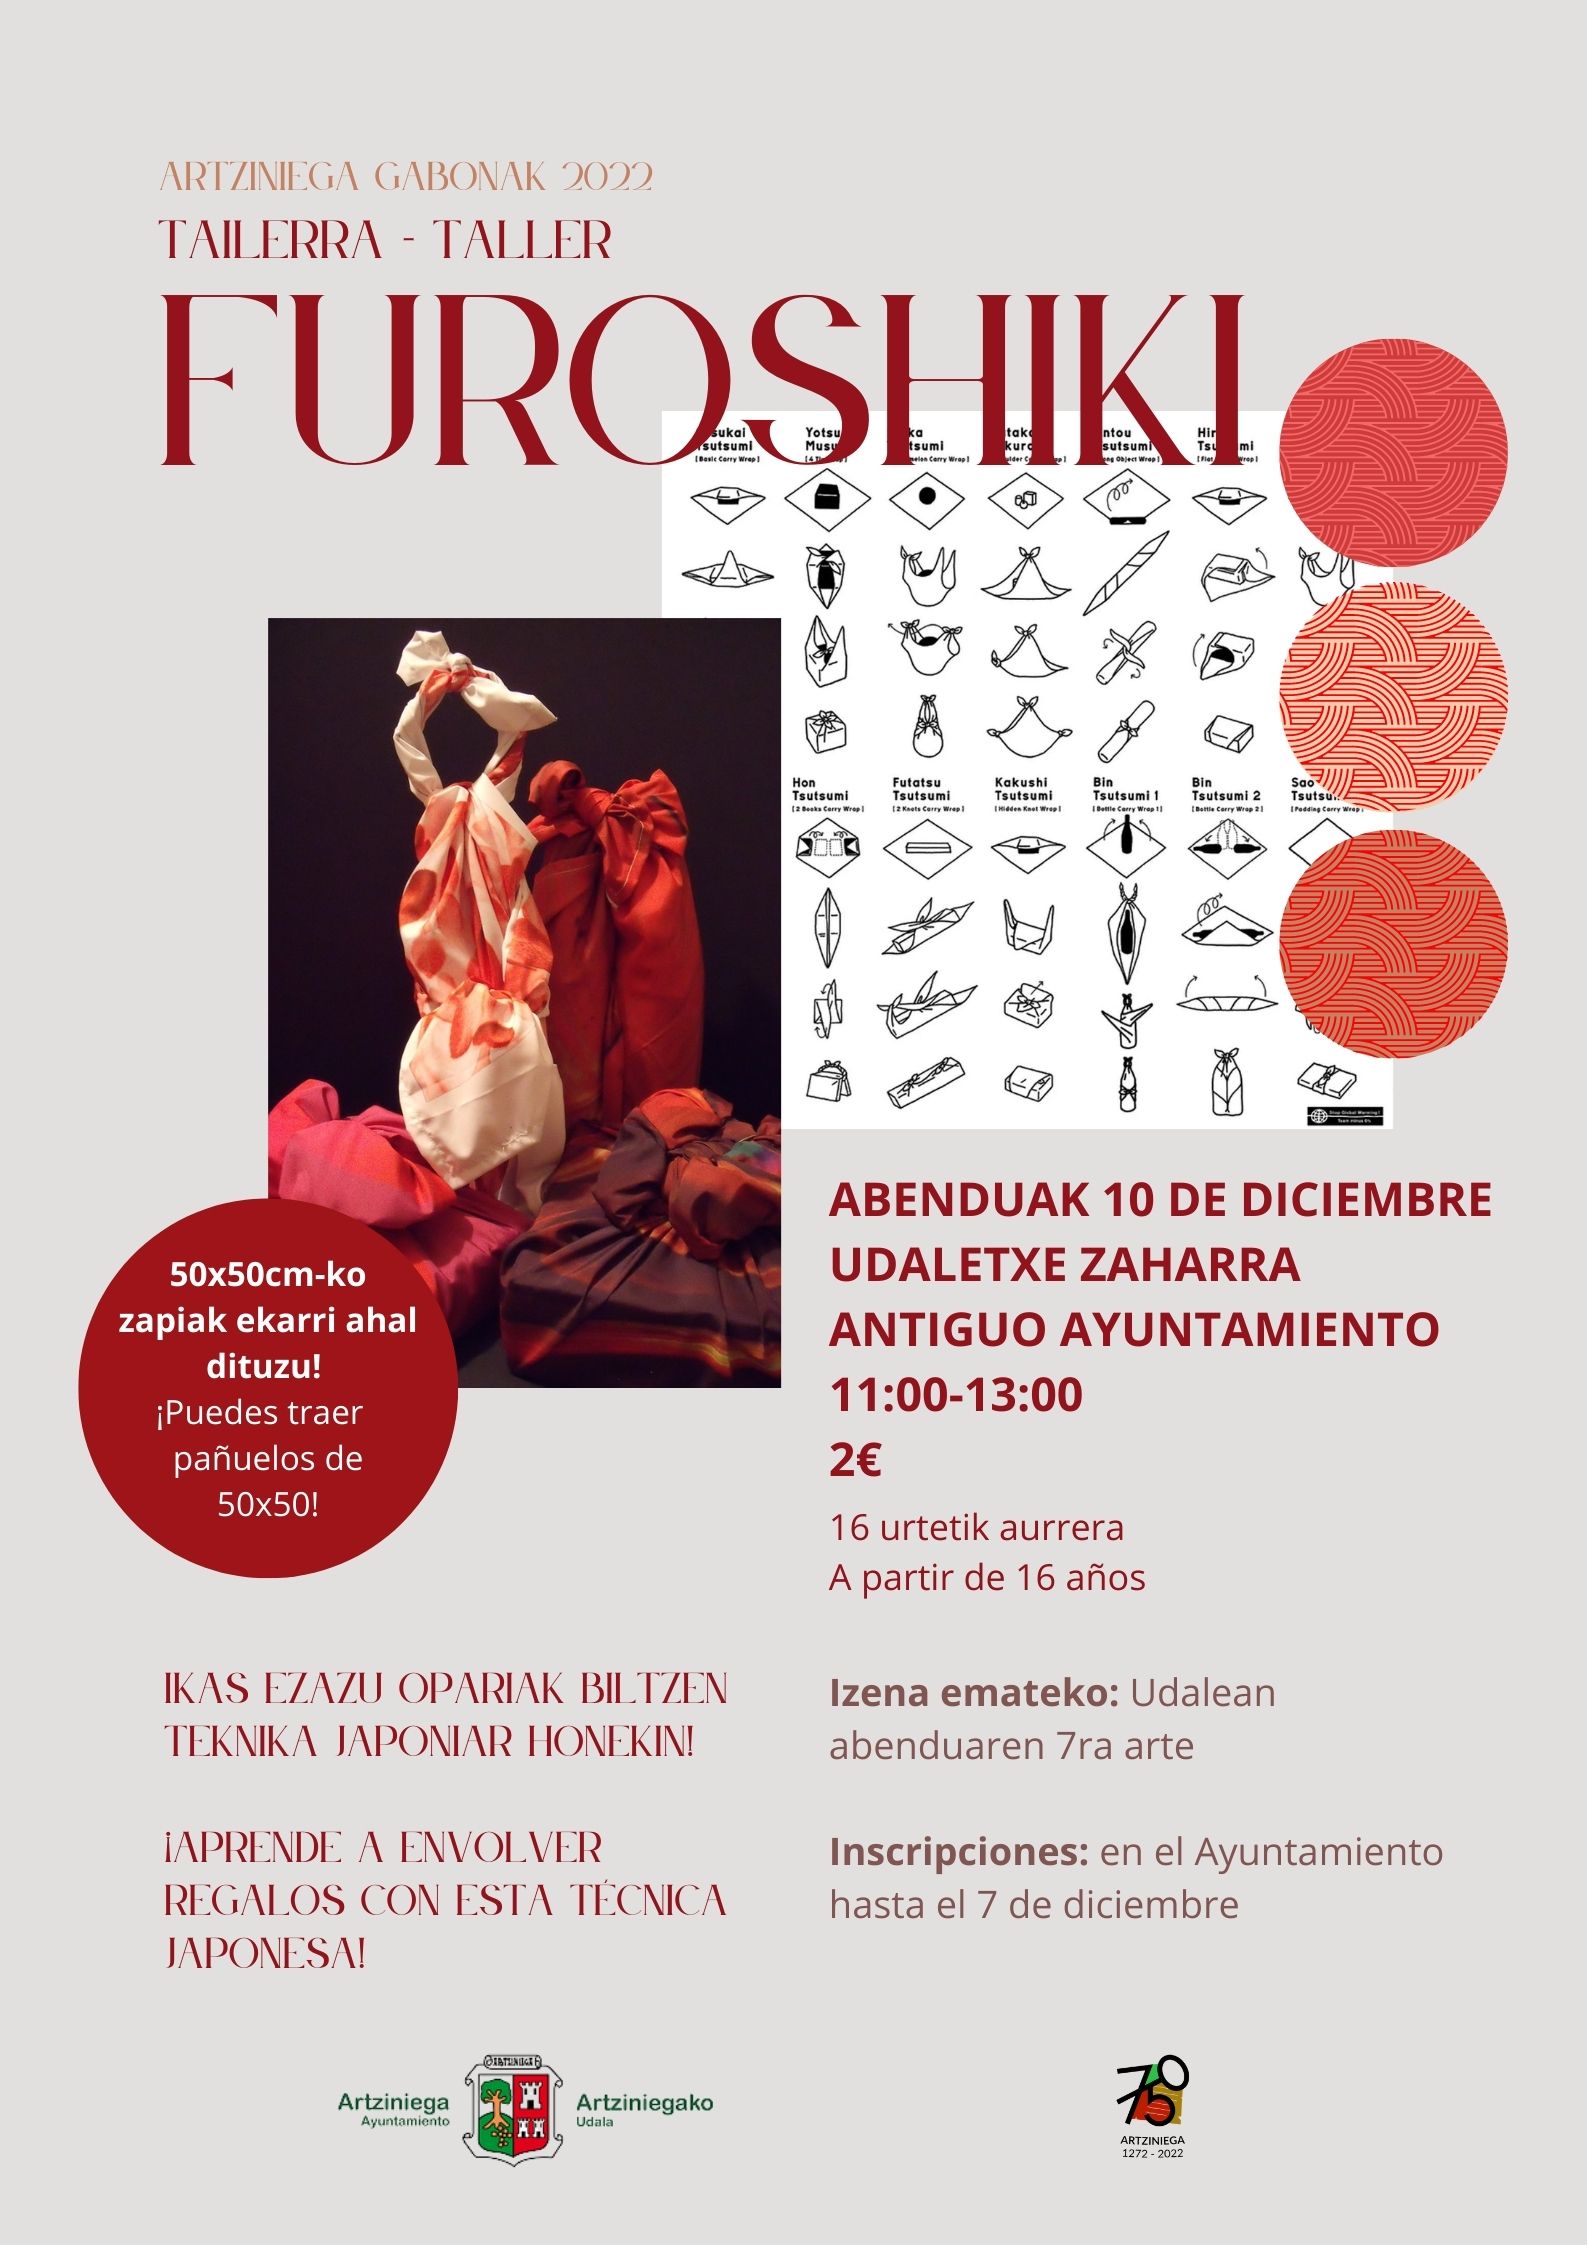 ARTZINIEGAKO GABONAK 2022: TALLER FUROSHIKI( 11 diciembrea las 11:00 en el Antiguo Ayuntamiento)